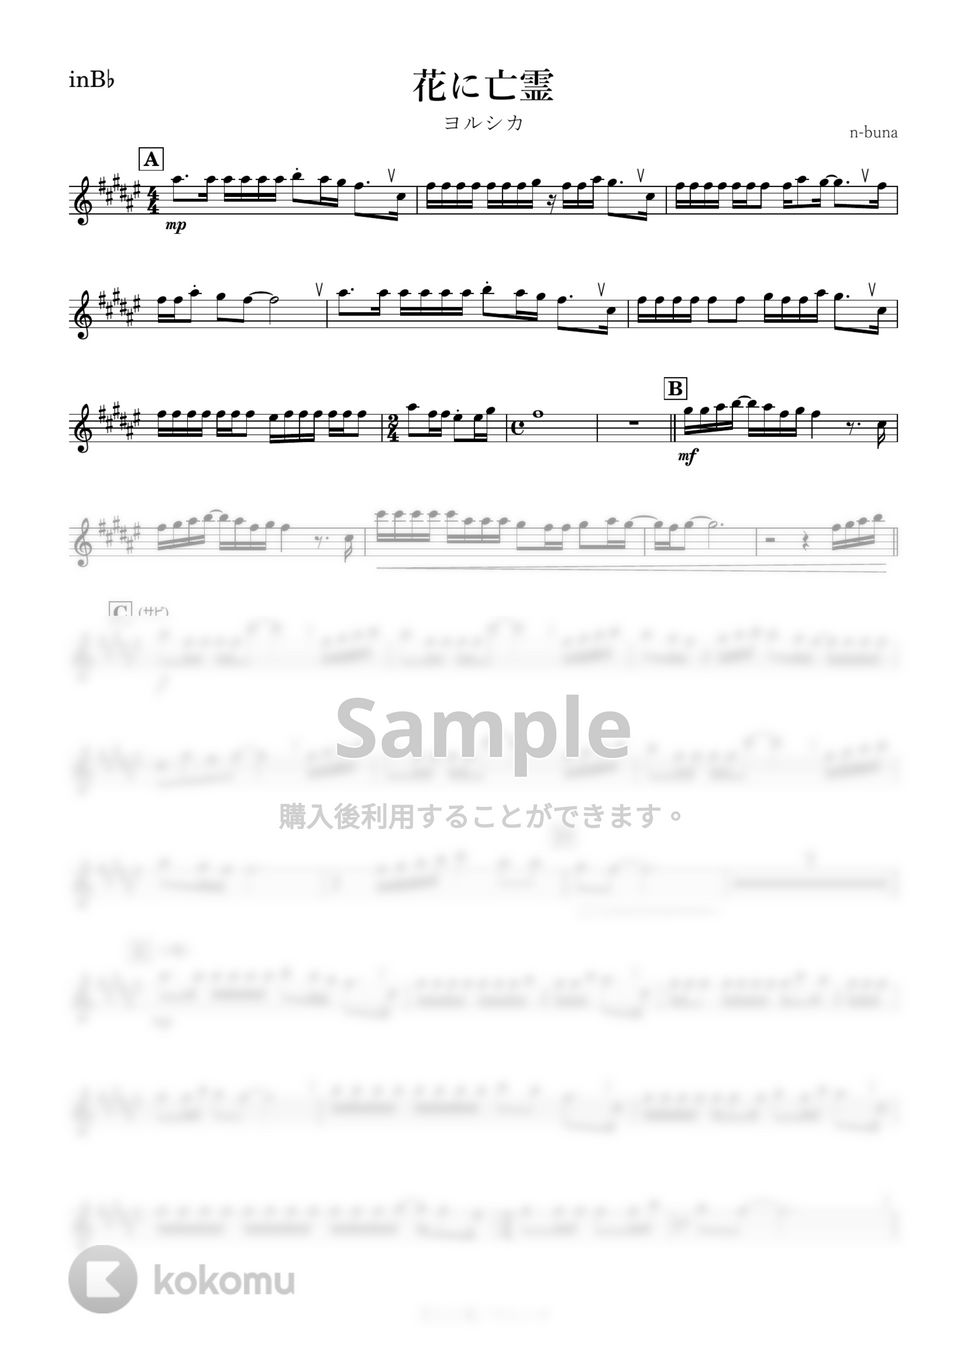 ヨルシカ - 花に亡霊 (B♭) by kanamusic